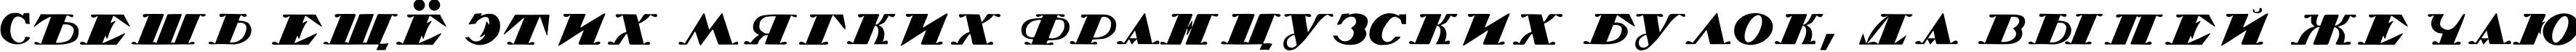 Пример написания шрифтом 1920 TYGRA текста на русском